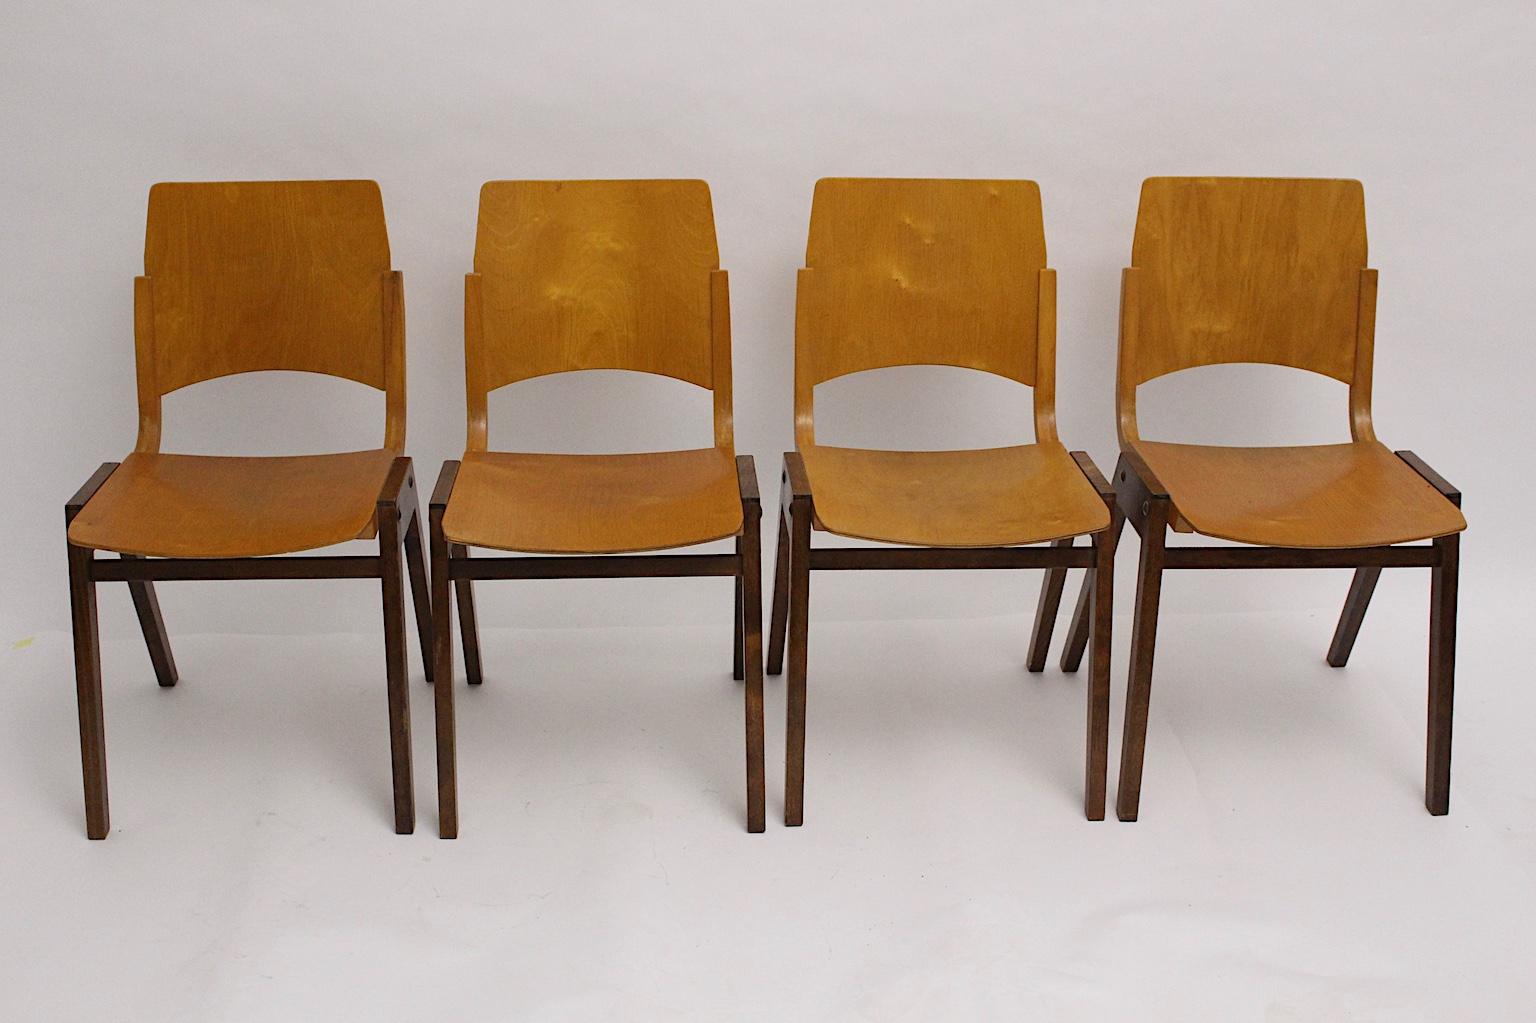 Ensemble de 4 chaises de salle à manger vintage en hêtre bicolore modèle P 7 de Roland Rainer conçu pour la Stadthalle de Vienne en 1952. Les chaises de salle à manger sont également empilables. Exécuté par Emil & Alfred Pollak.
En outre, les